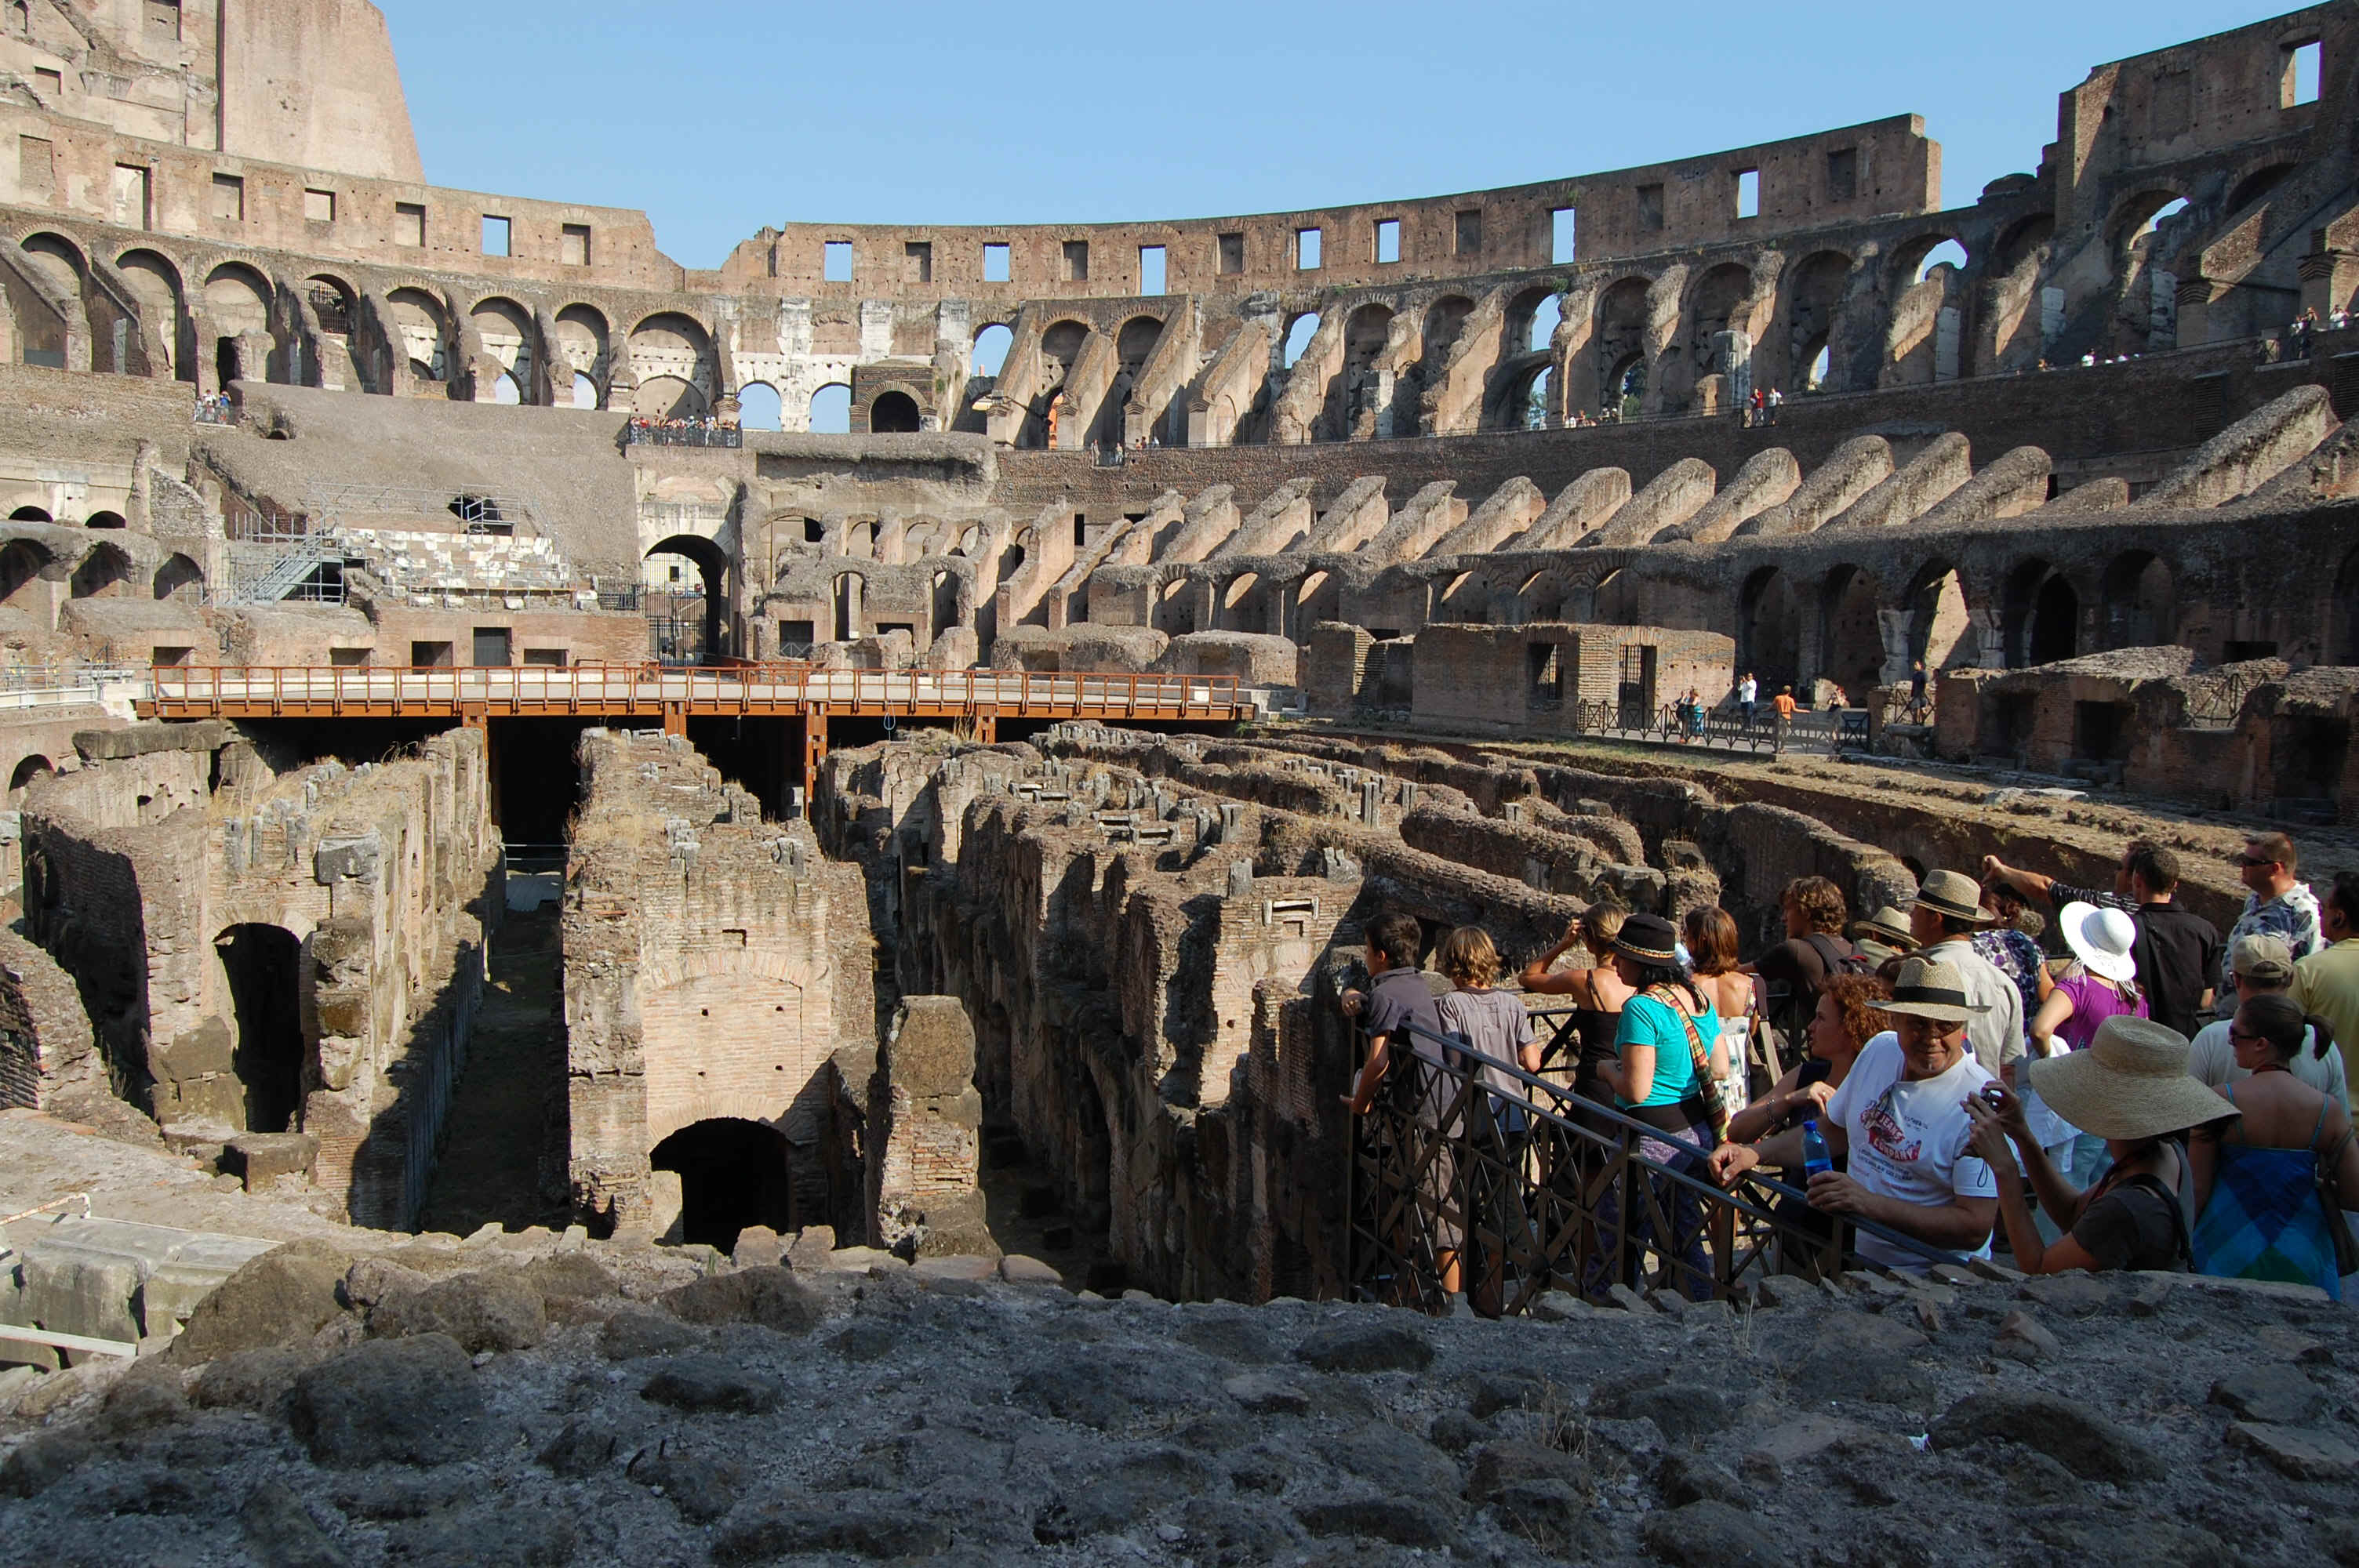 Colosseum-8.jpg (1581786 bytes)